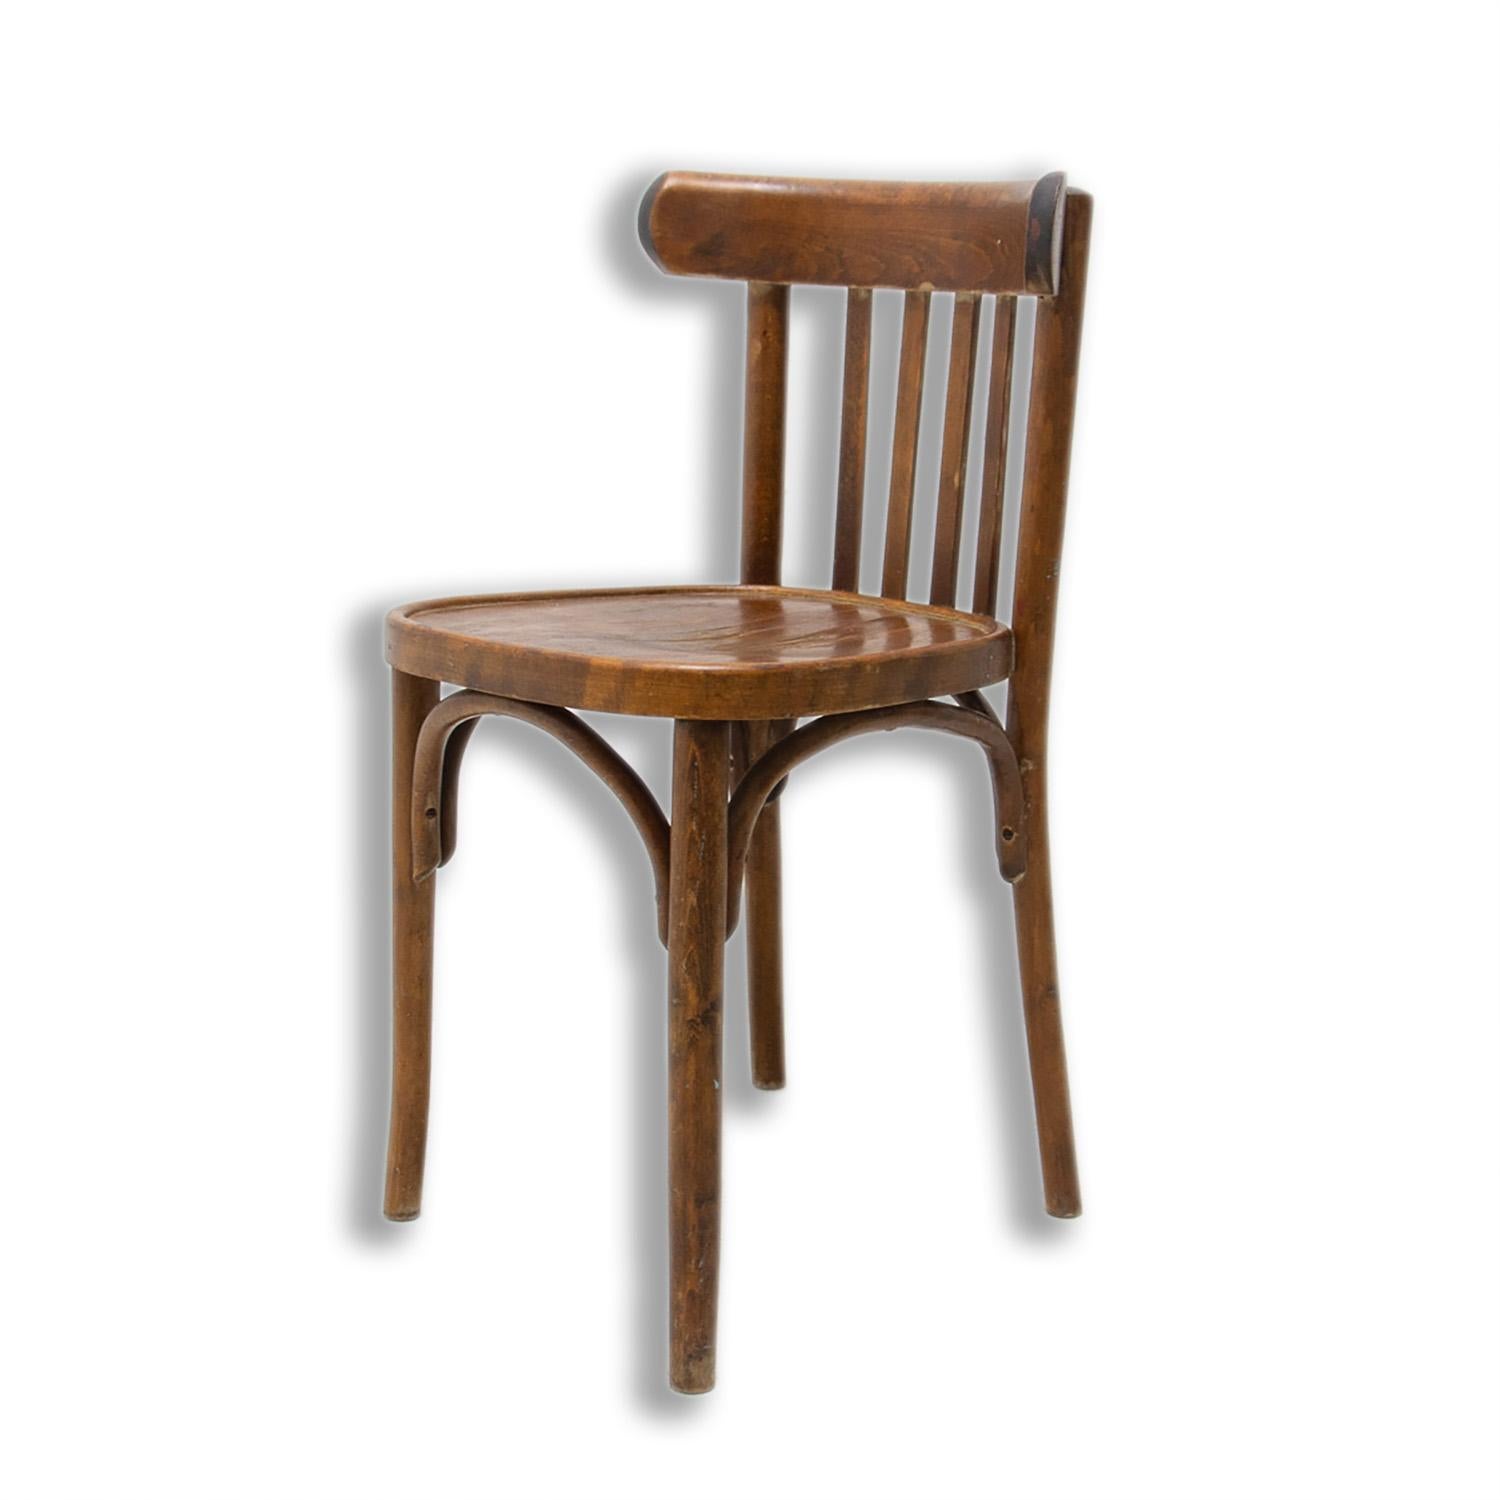 Czech Beech bentwood Chair from Thonet, 1950´s